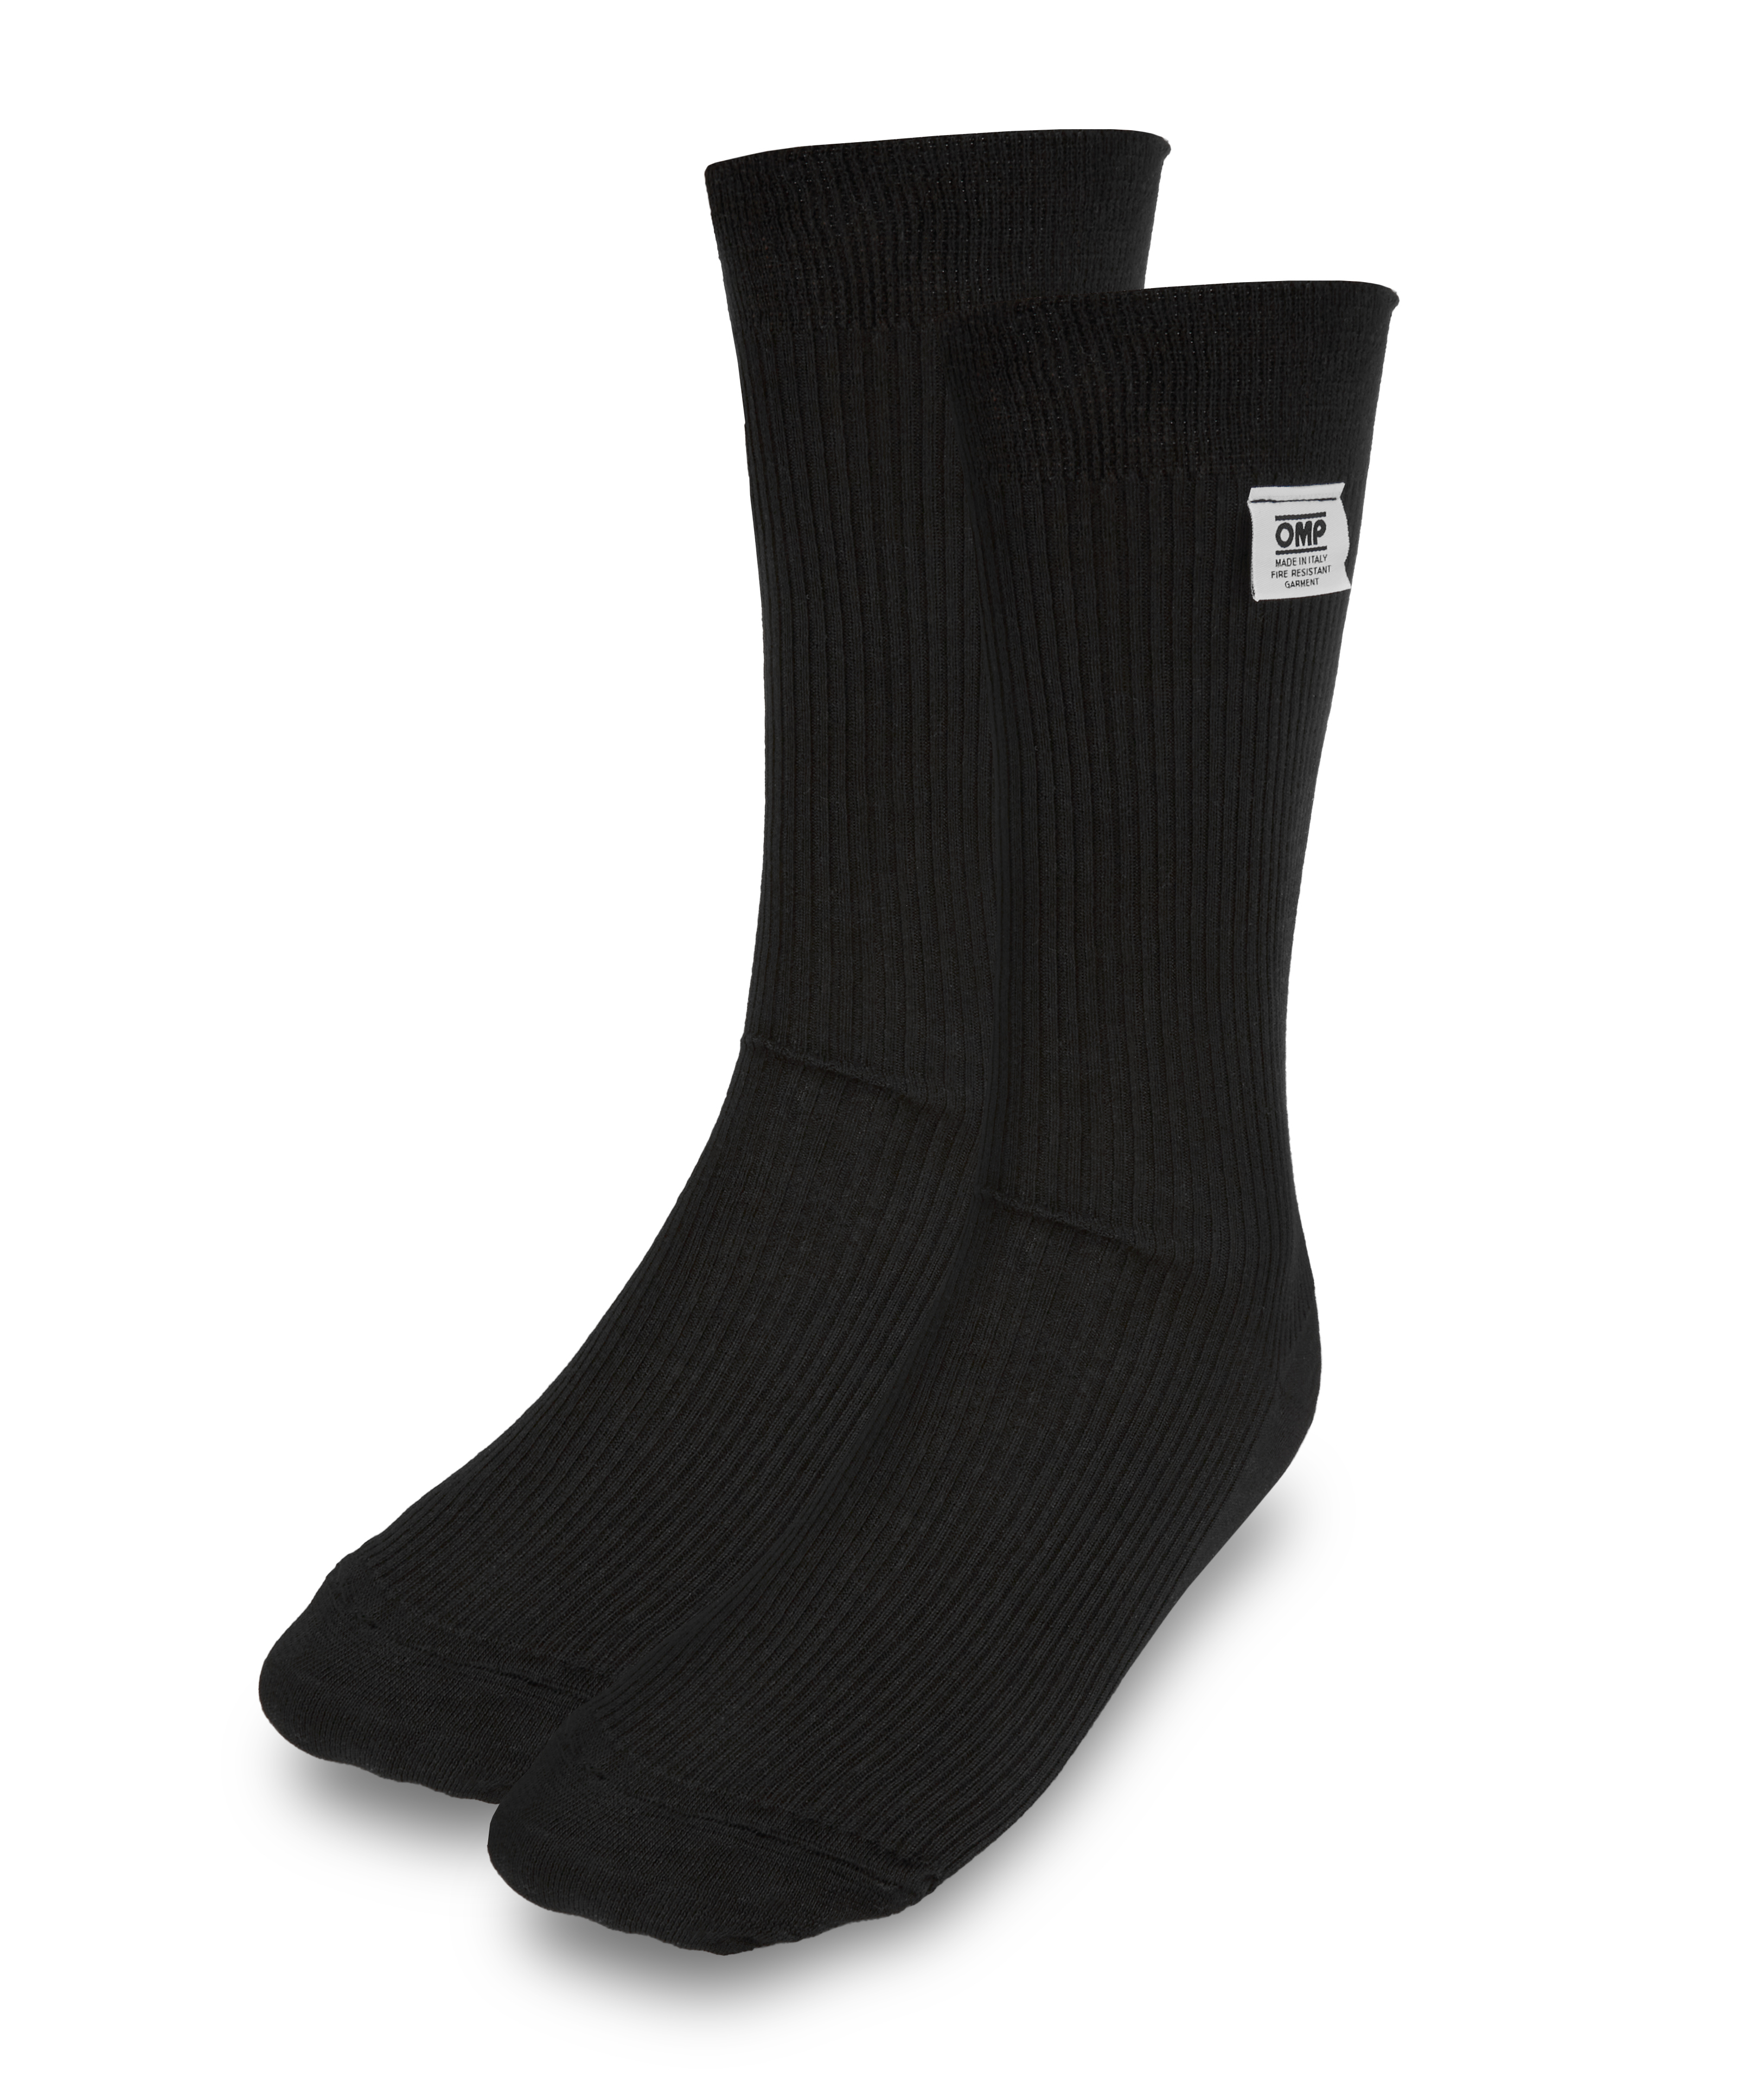 Racing Socks Black Nomex Size Medium FIA - IE0-0762-A01-071-M